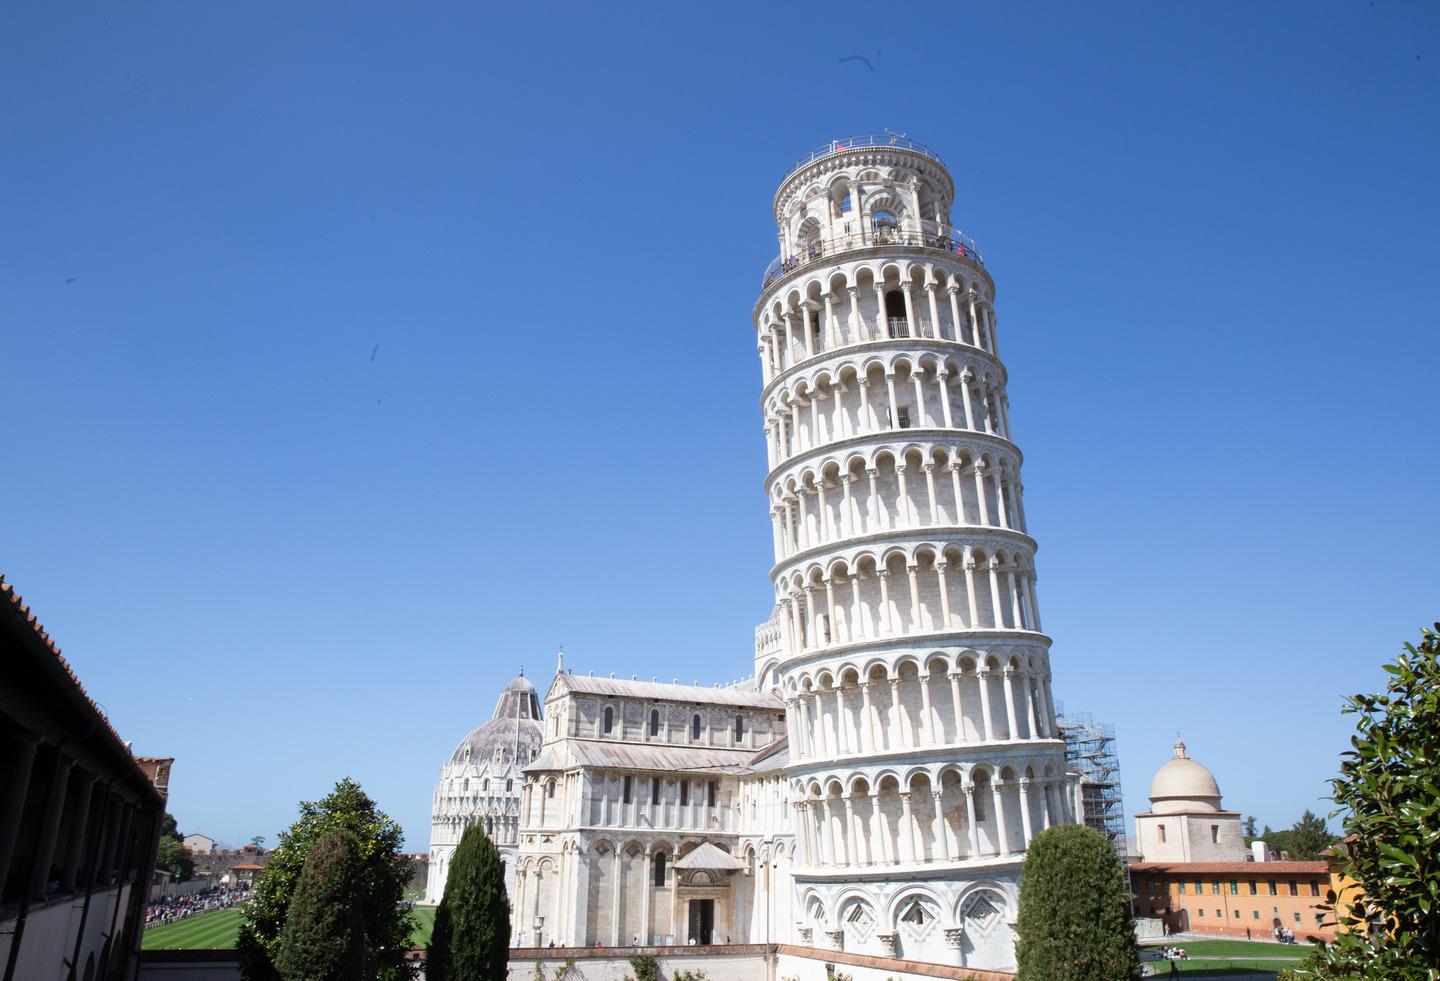 La Torre di Pisa festeggia 850 anni. Eventi gratuiti e due superstar: Toni Servillo e il tenore Meli